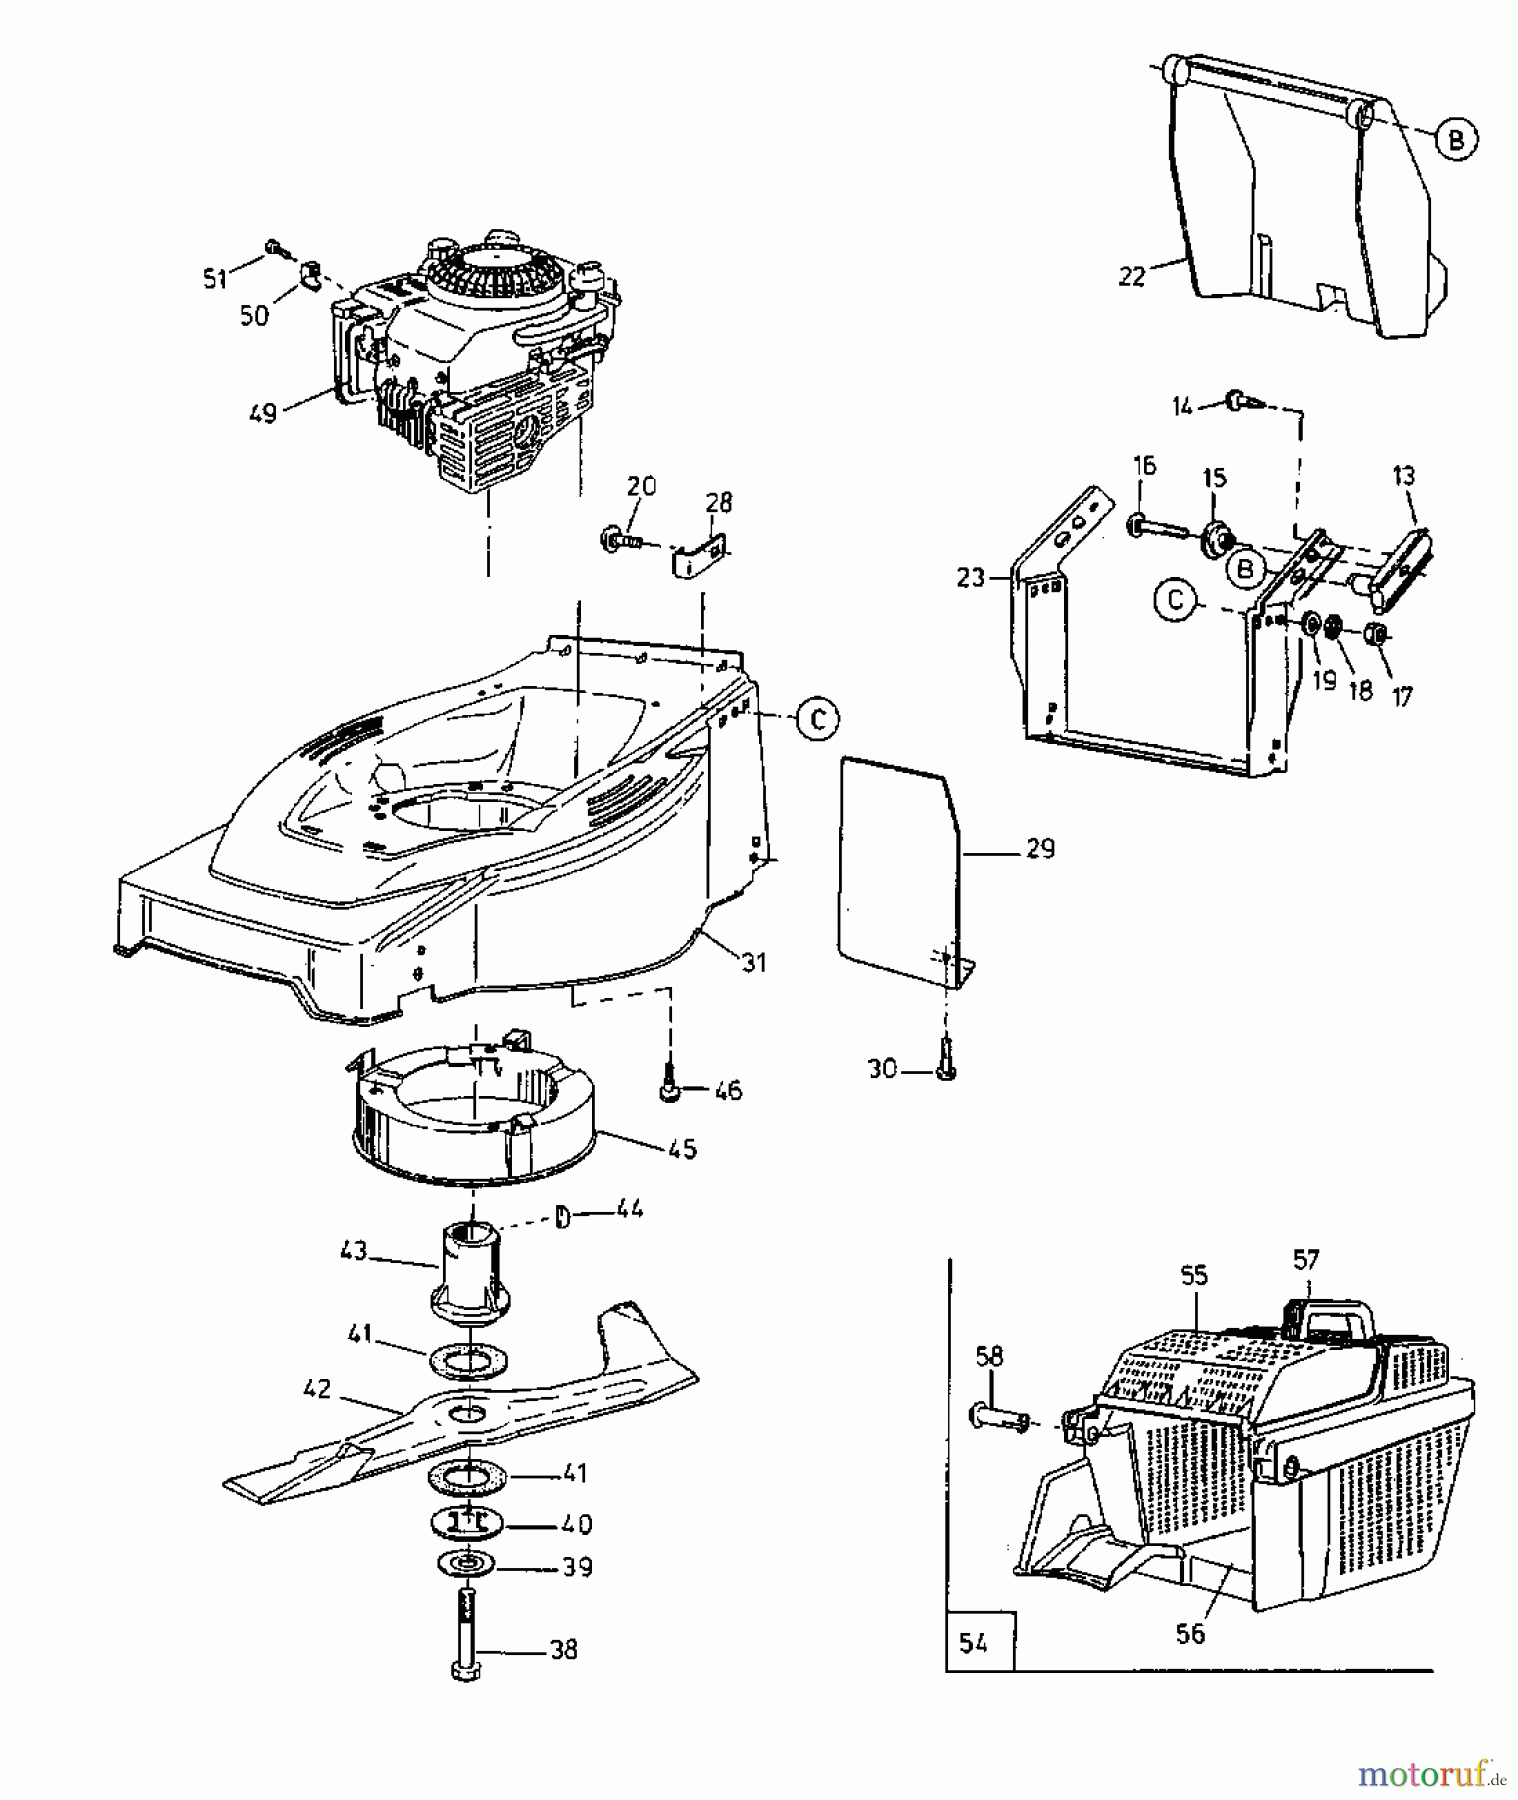  Gutbrod Tondeuse thermique HB 42 11C-L10Z604  (2000) Machine de base